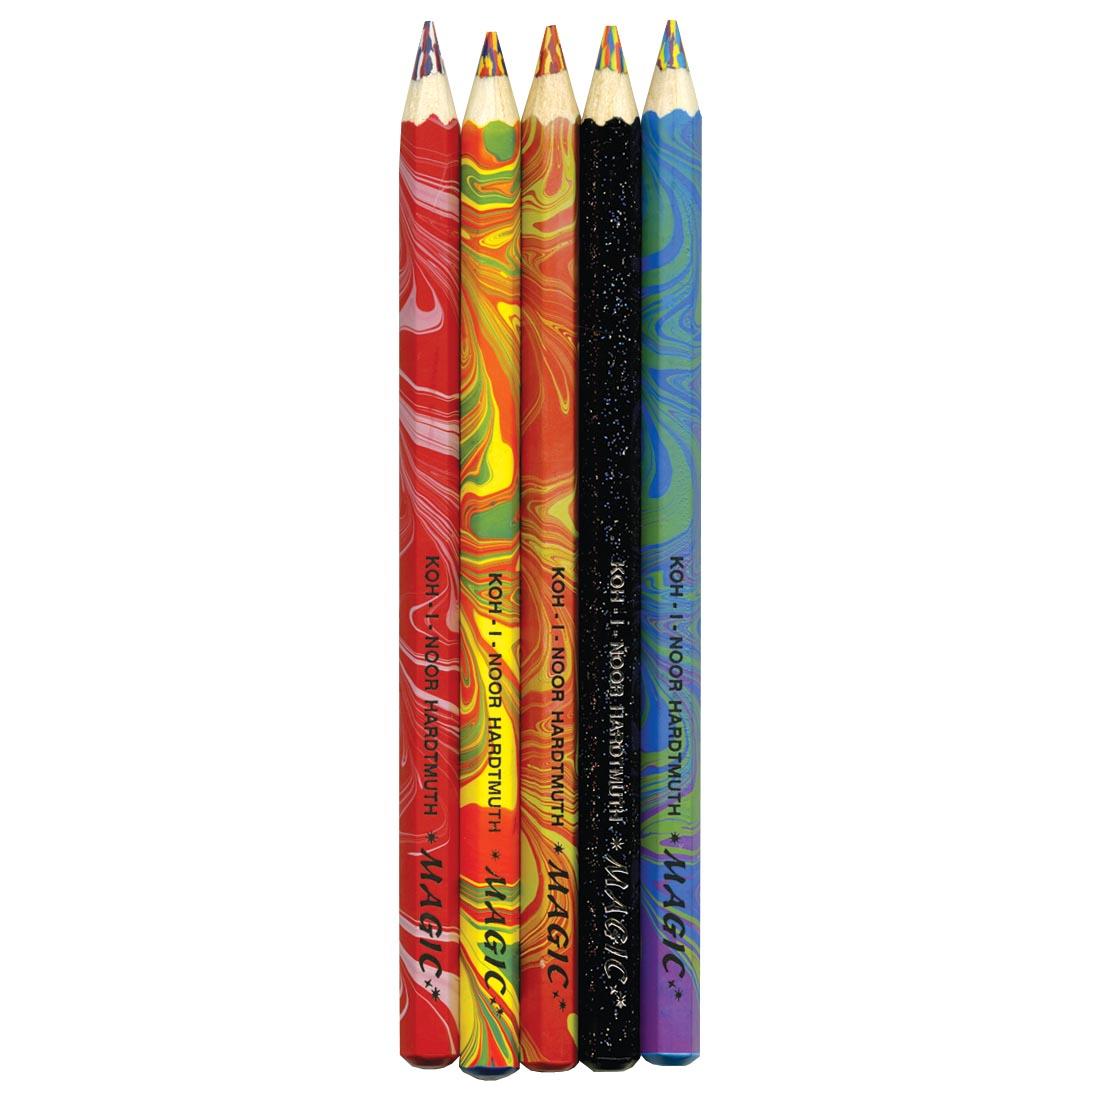 Koh-I-Noor Magic FX Pencils 5-Count Set